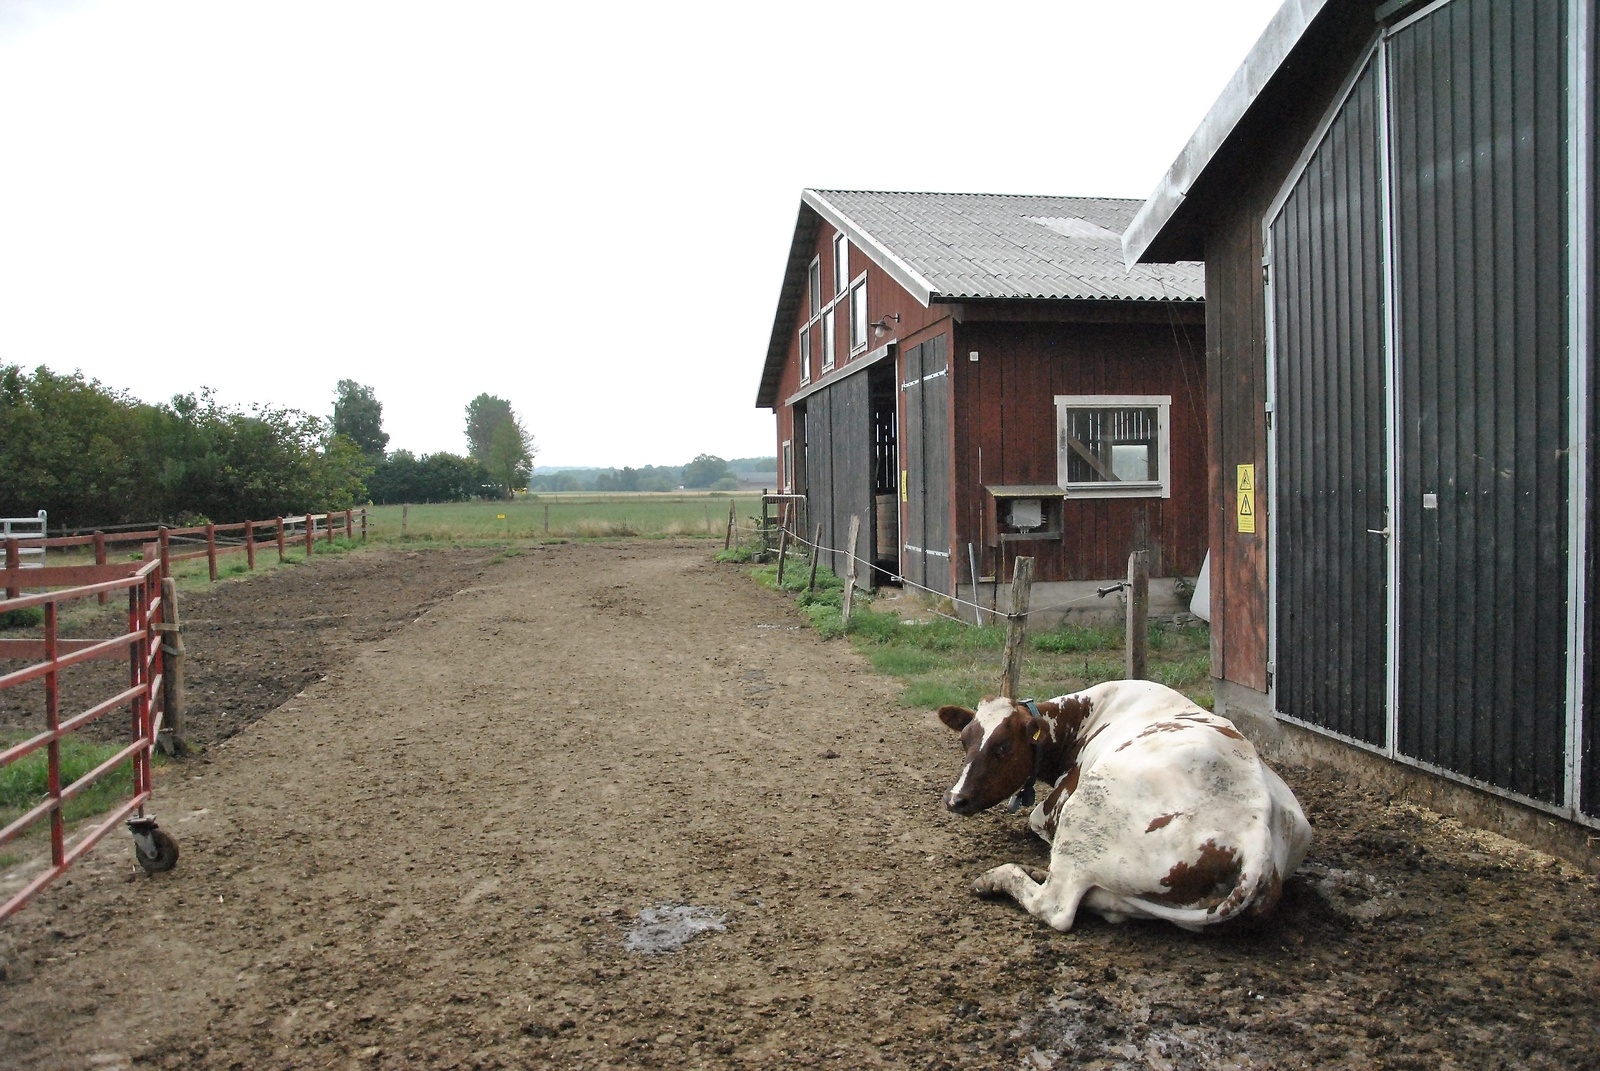 Bara en ko av de 120 mjölkkor som Eskil Carlsson har i stallet ville vara ute. De flesta höll sig inne i stallet.